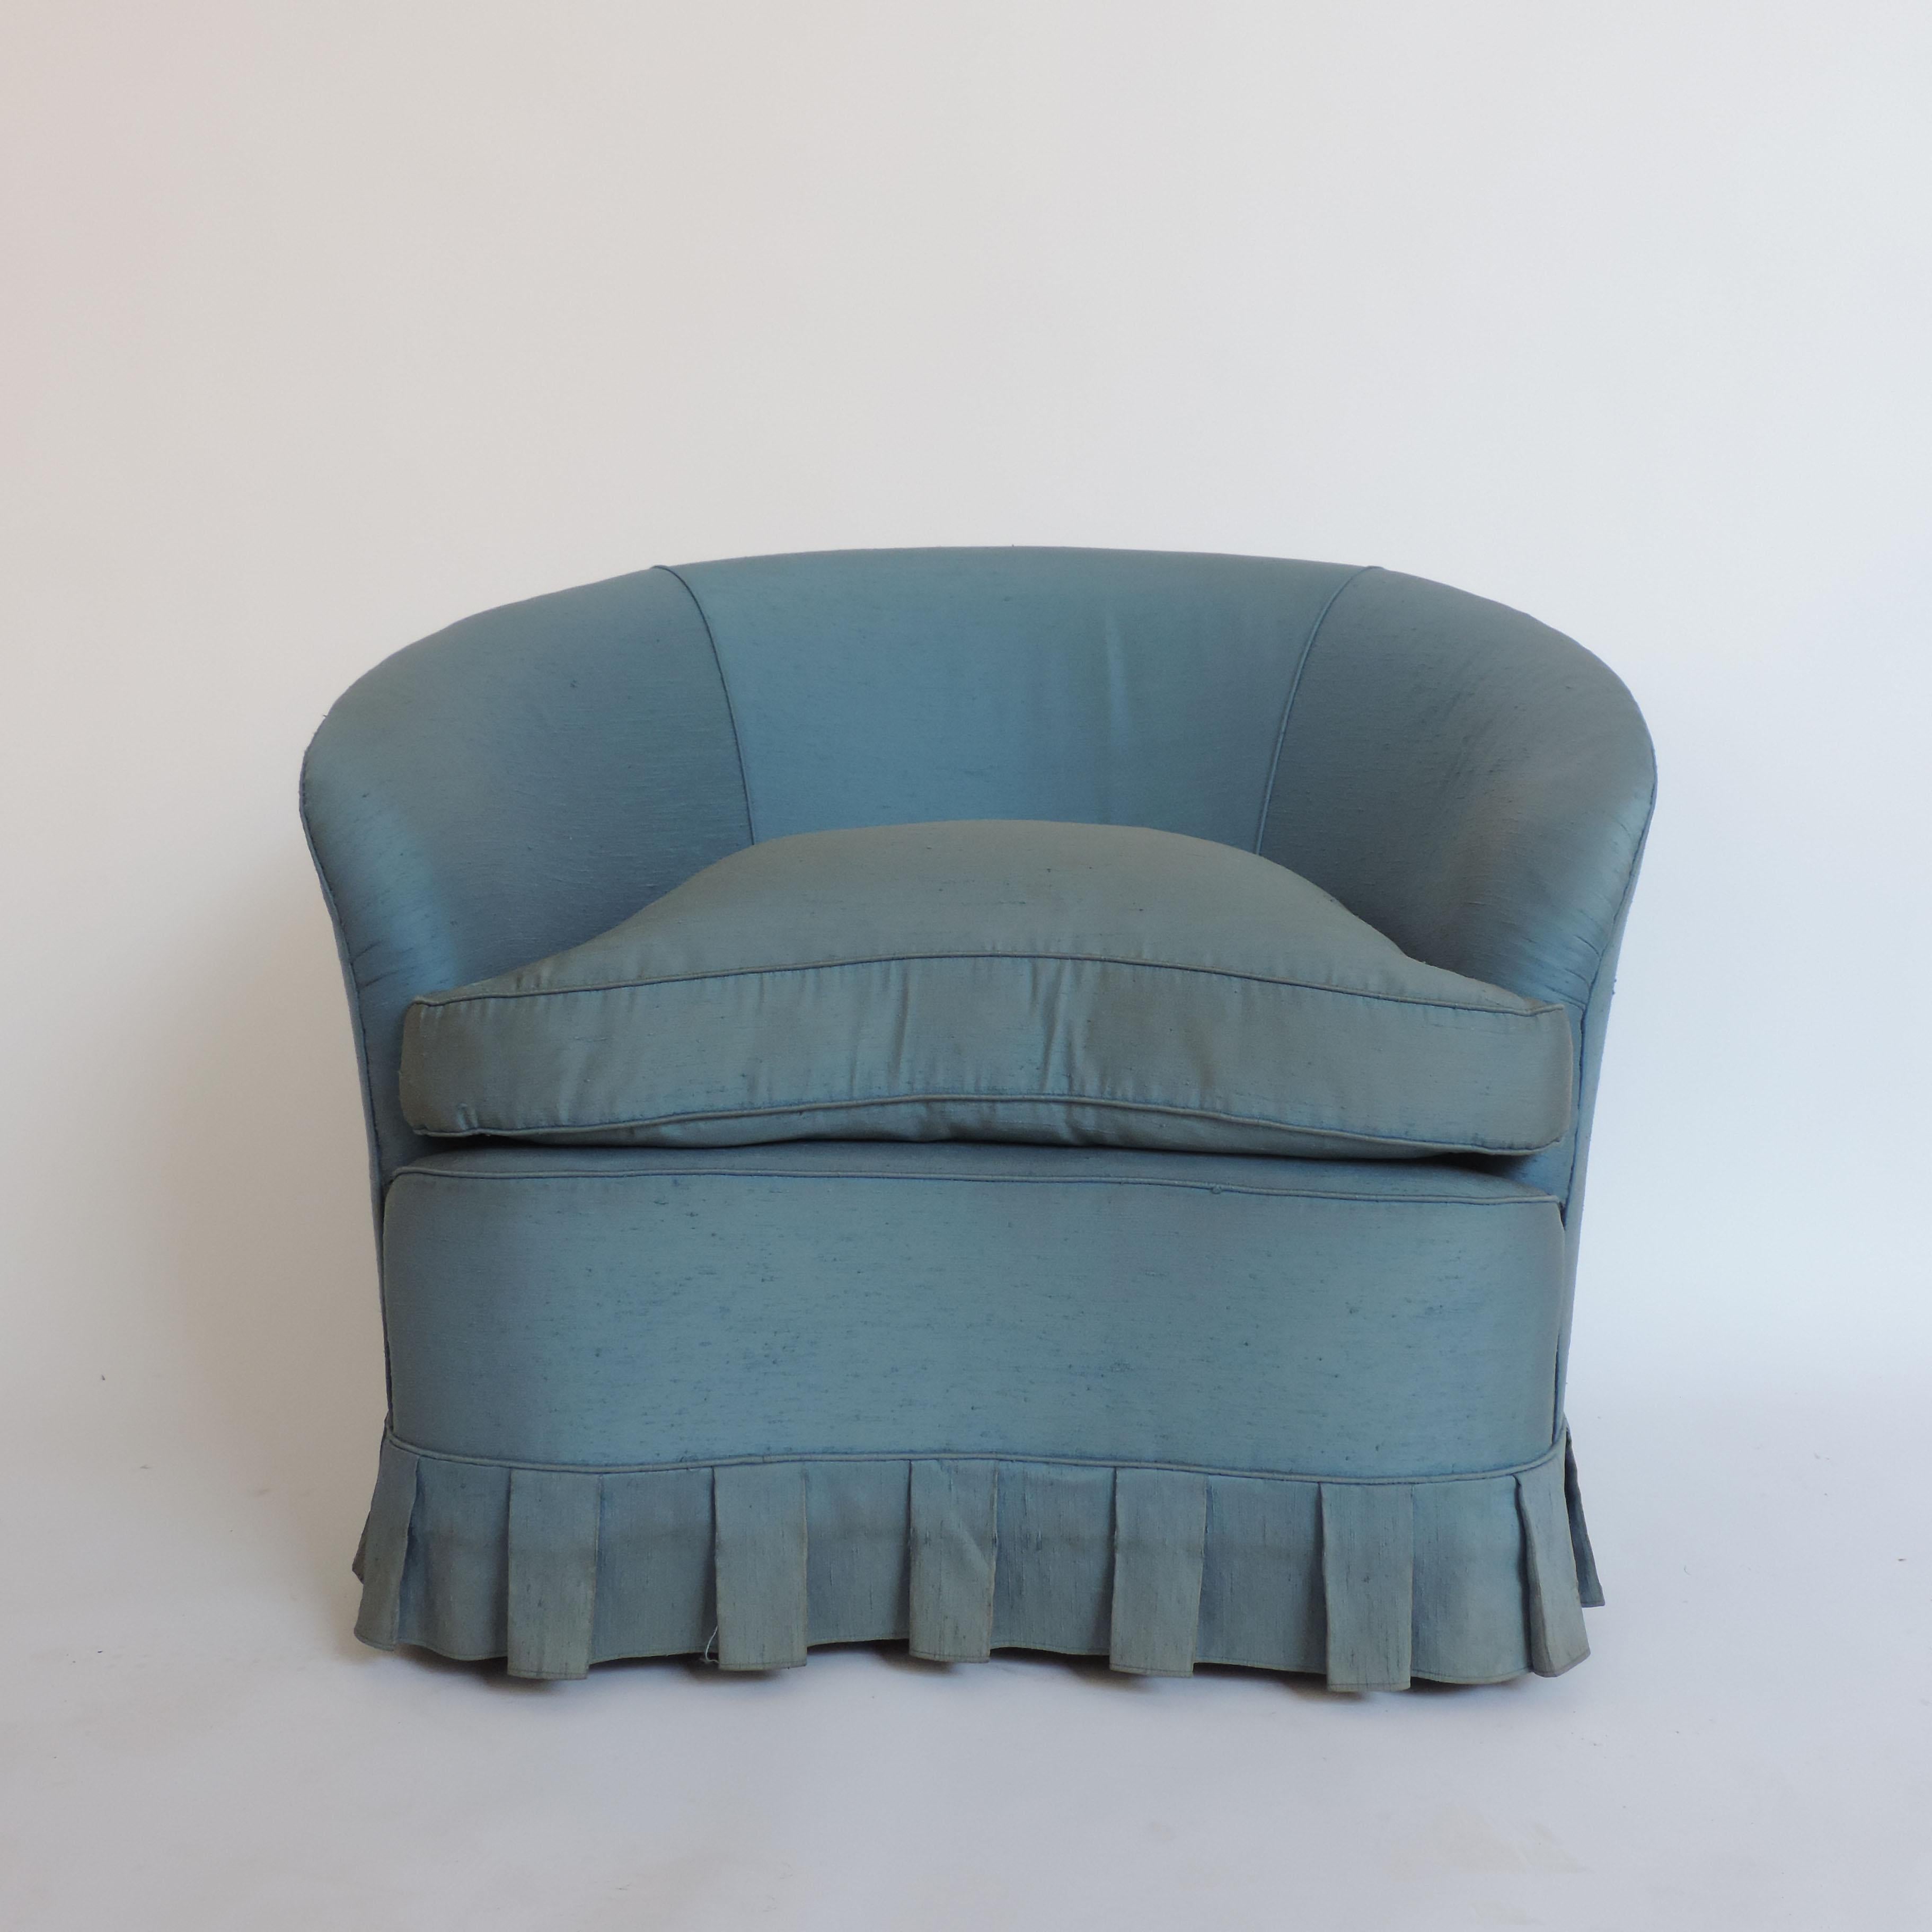 Ein Paar italienische Sessel aus den 1940er Jahren in ihrem ursprünglichen blauen Stoff.